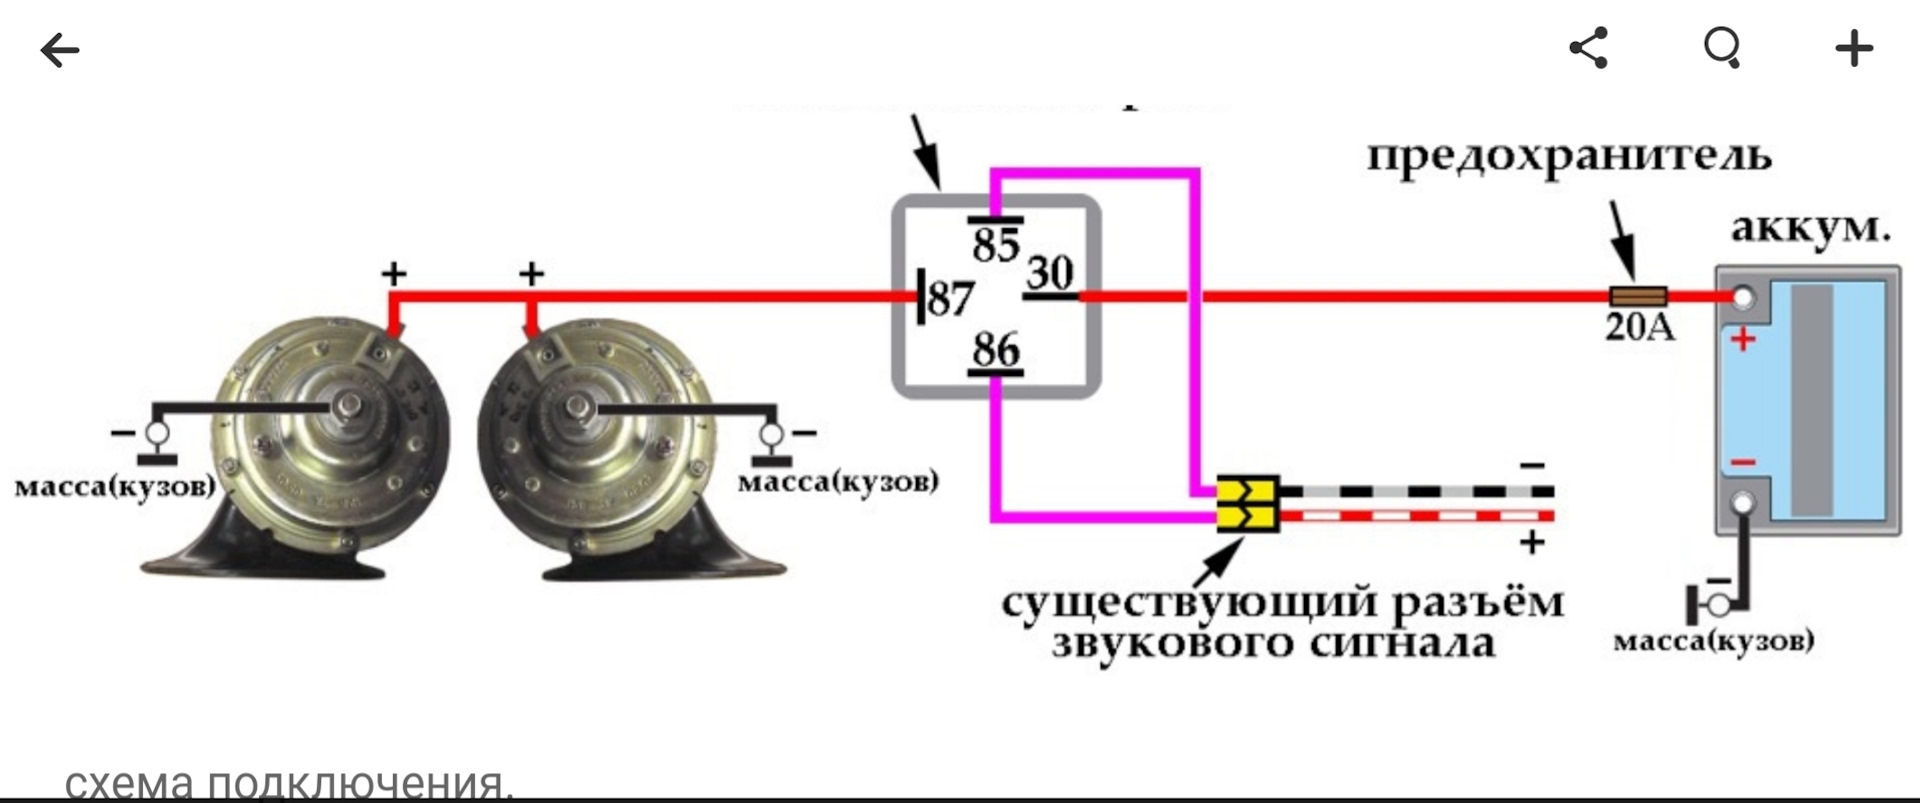 Схема подключения двойного сигнала через реле